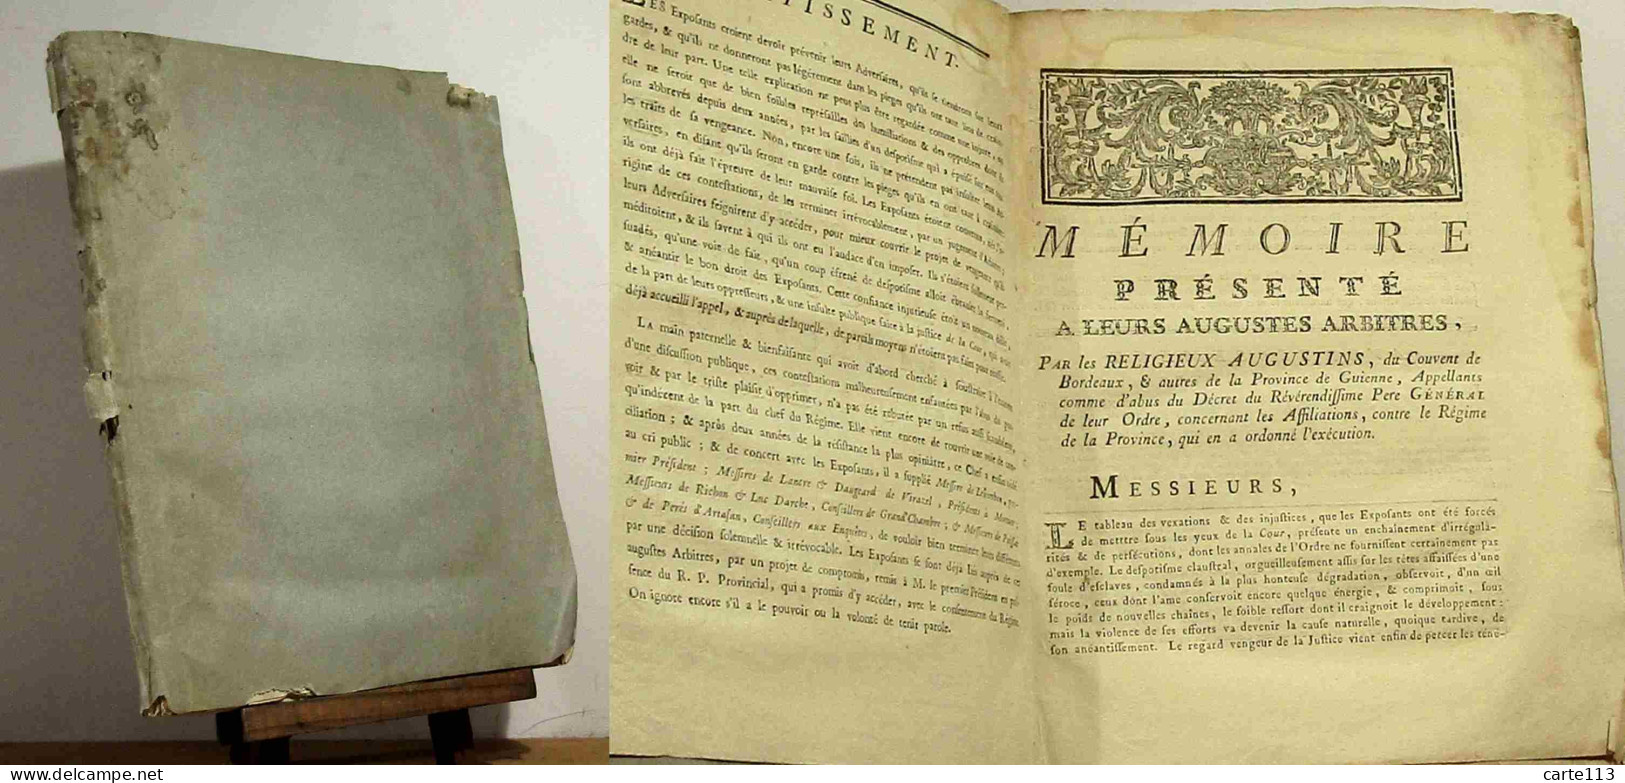 COLLECTIF  - MEMOIRE PRESENTE A LEURS AUGUSTES ARBITRES, PAR LES RELIGIEUX AUGUSTI - 1701-1800